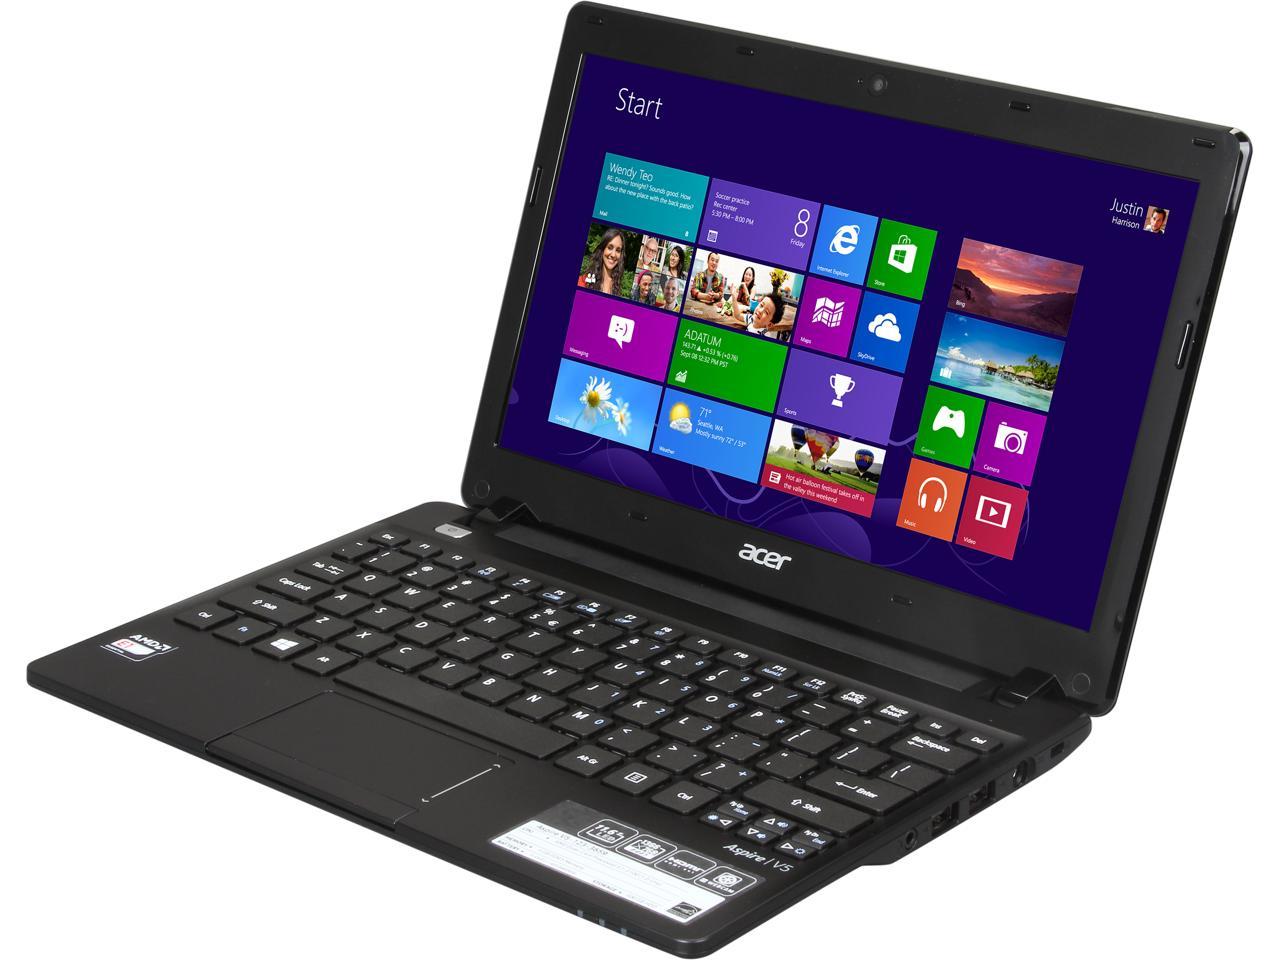 Acer Laptop Aspire V5 123 3659 Amd E1 Series E1 2100 100ghz 4gb